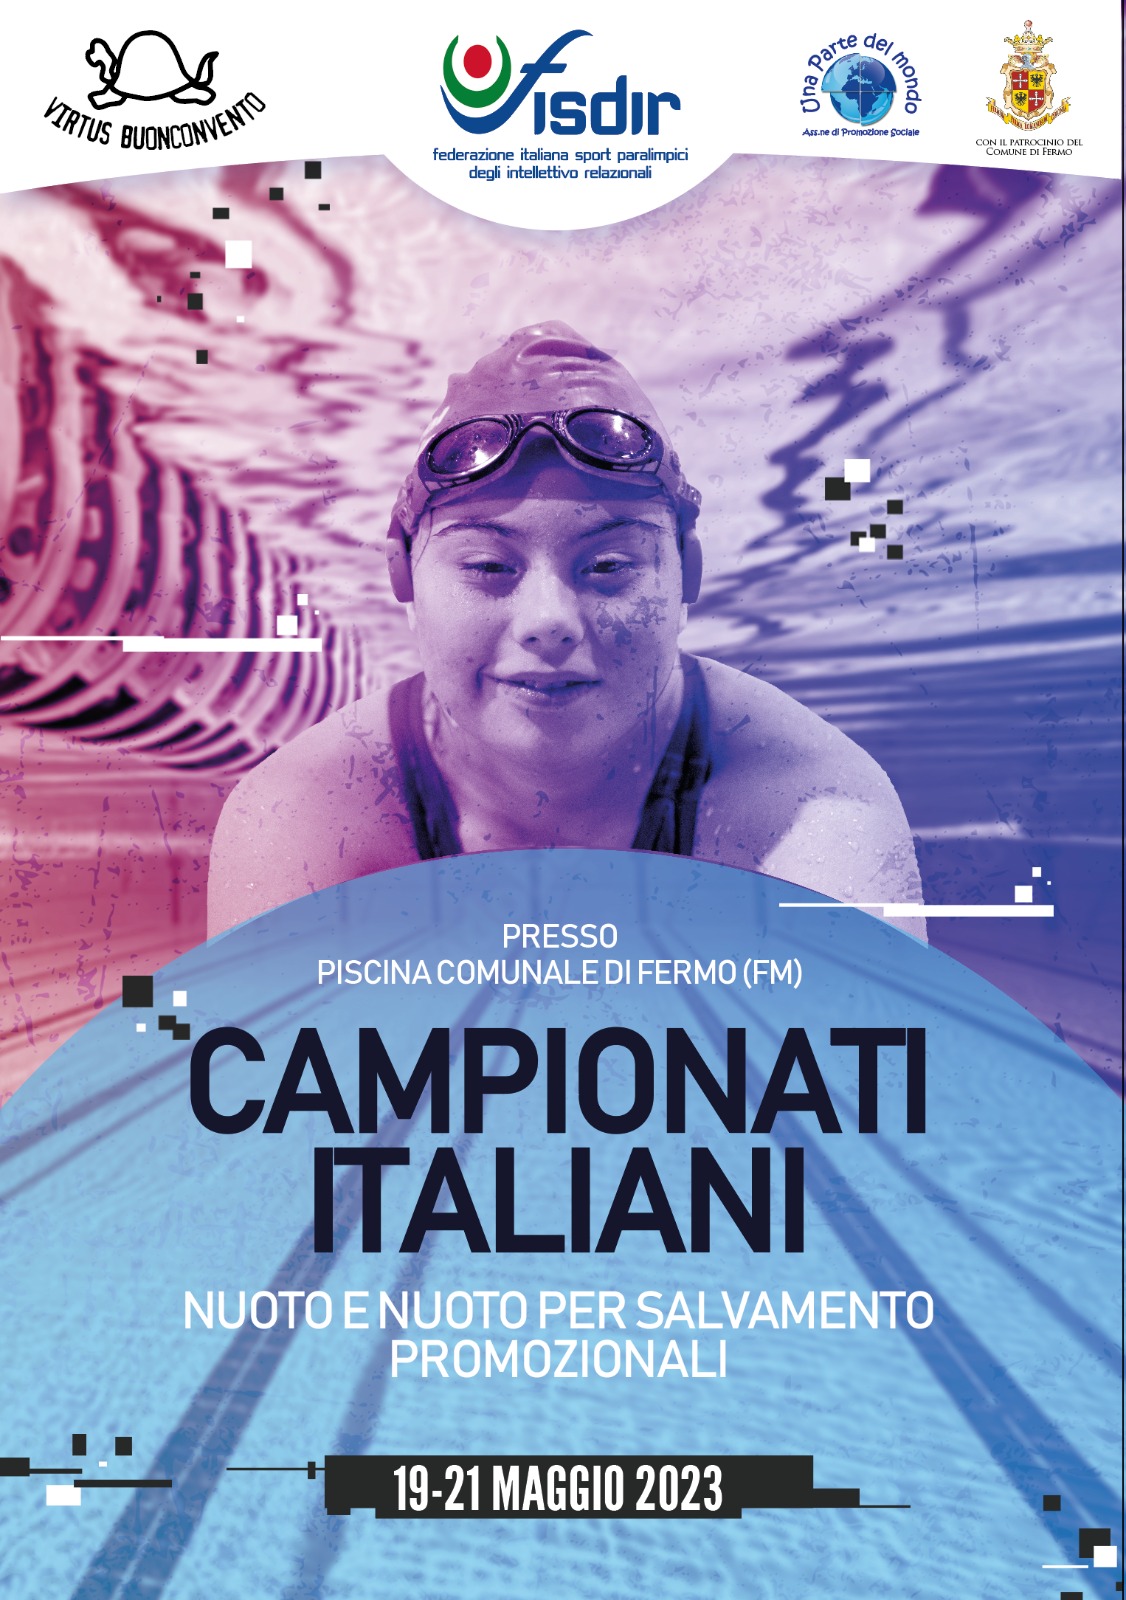 Campionati Italiani Promozionali Nuoto e Nuoto per salvamento – Online l’elenco iscritti